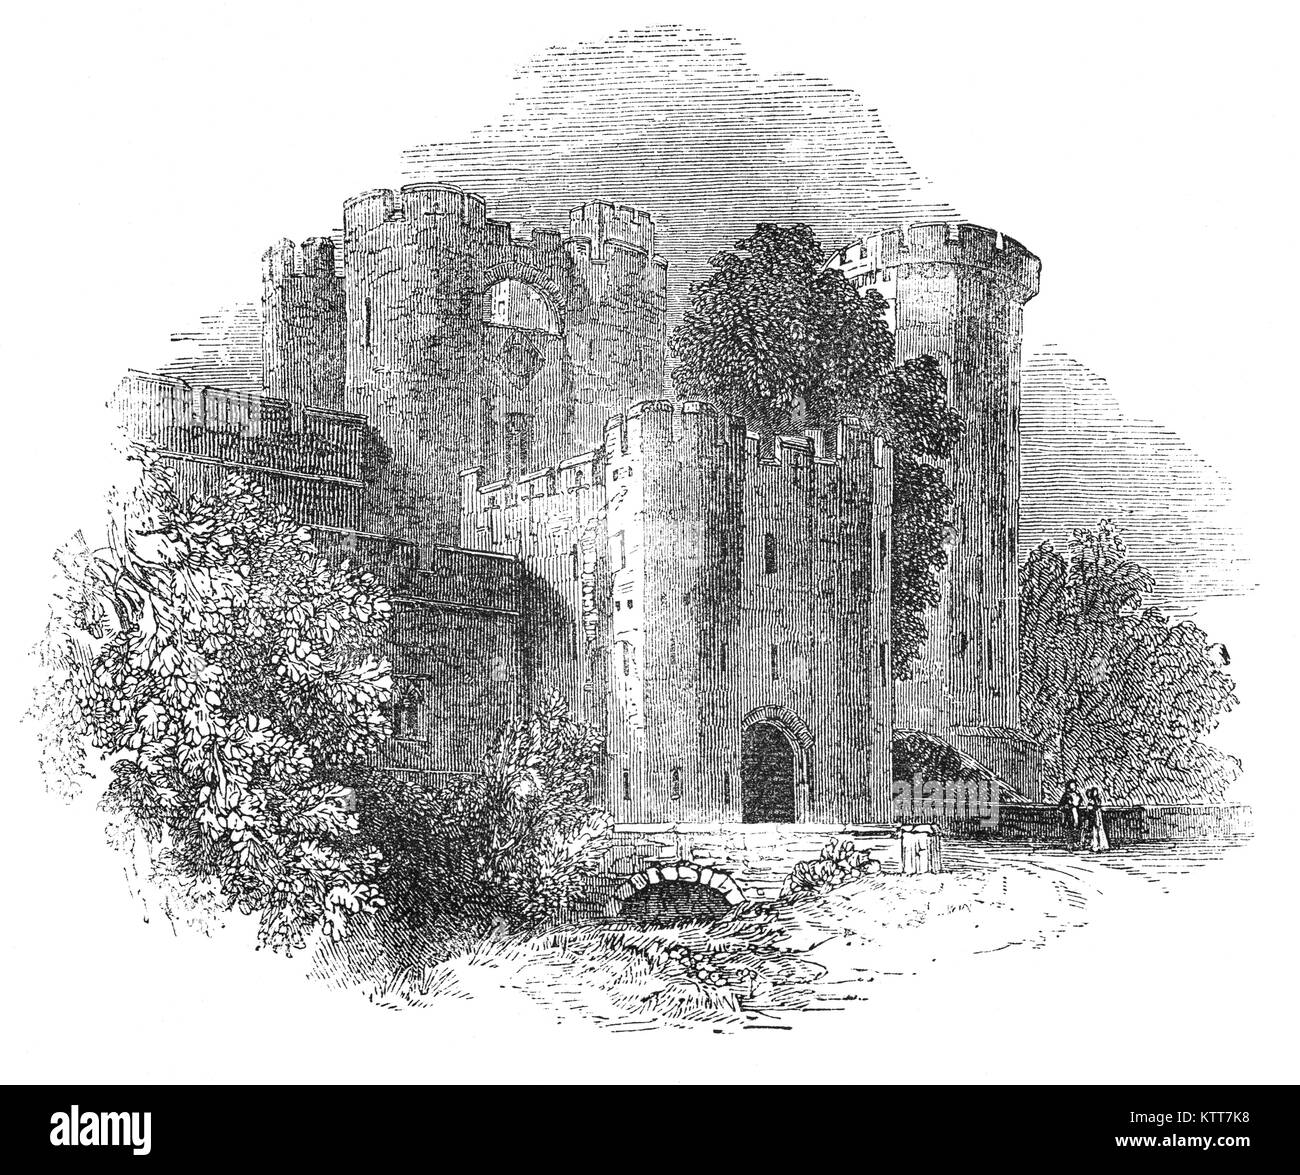 Mittelalterliche Schloss Warwick war eine Motte-und-bailey Anreicherung von Wilhelm dem Eroberer in 1068 gebaut. Während der Regierungszeit von König Henry II (1154-89), es war mit einer steinernen Burg in Form einer Shell nahm mit allen Gebäuden gegen die Ringmauer errichtet, ersetzt. Während des Barons' Aufstand von 1173 - 74, dem Grafen von Warwick treu geblieben König Heinrich II., und das Schloss wurde verwendet, um Rückstellungen zu speichern. Liegt an einer Biegung des Flusses Avon, Warwick ist die Hauptstadt der Grafschaft Warwickshire, England. Stockfoto